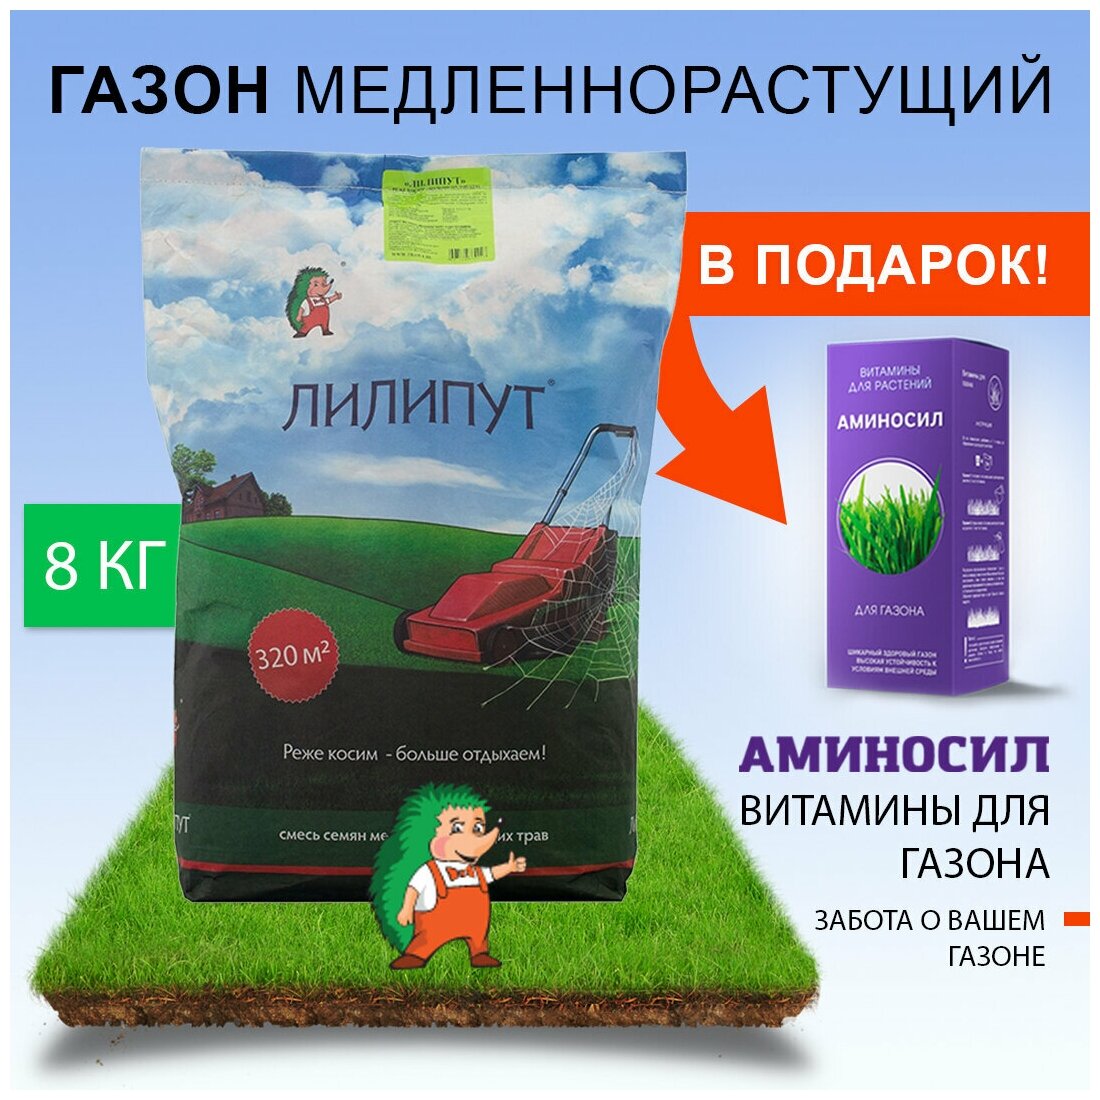 Семена газонной травы Зеленый Ковер "Лилипут", 8 кг